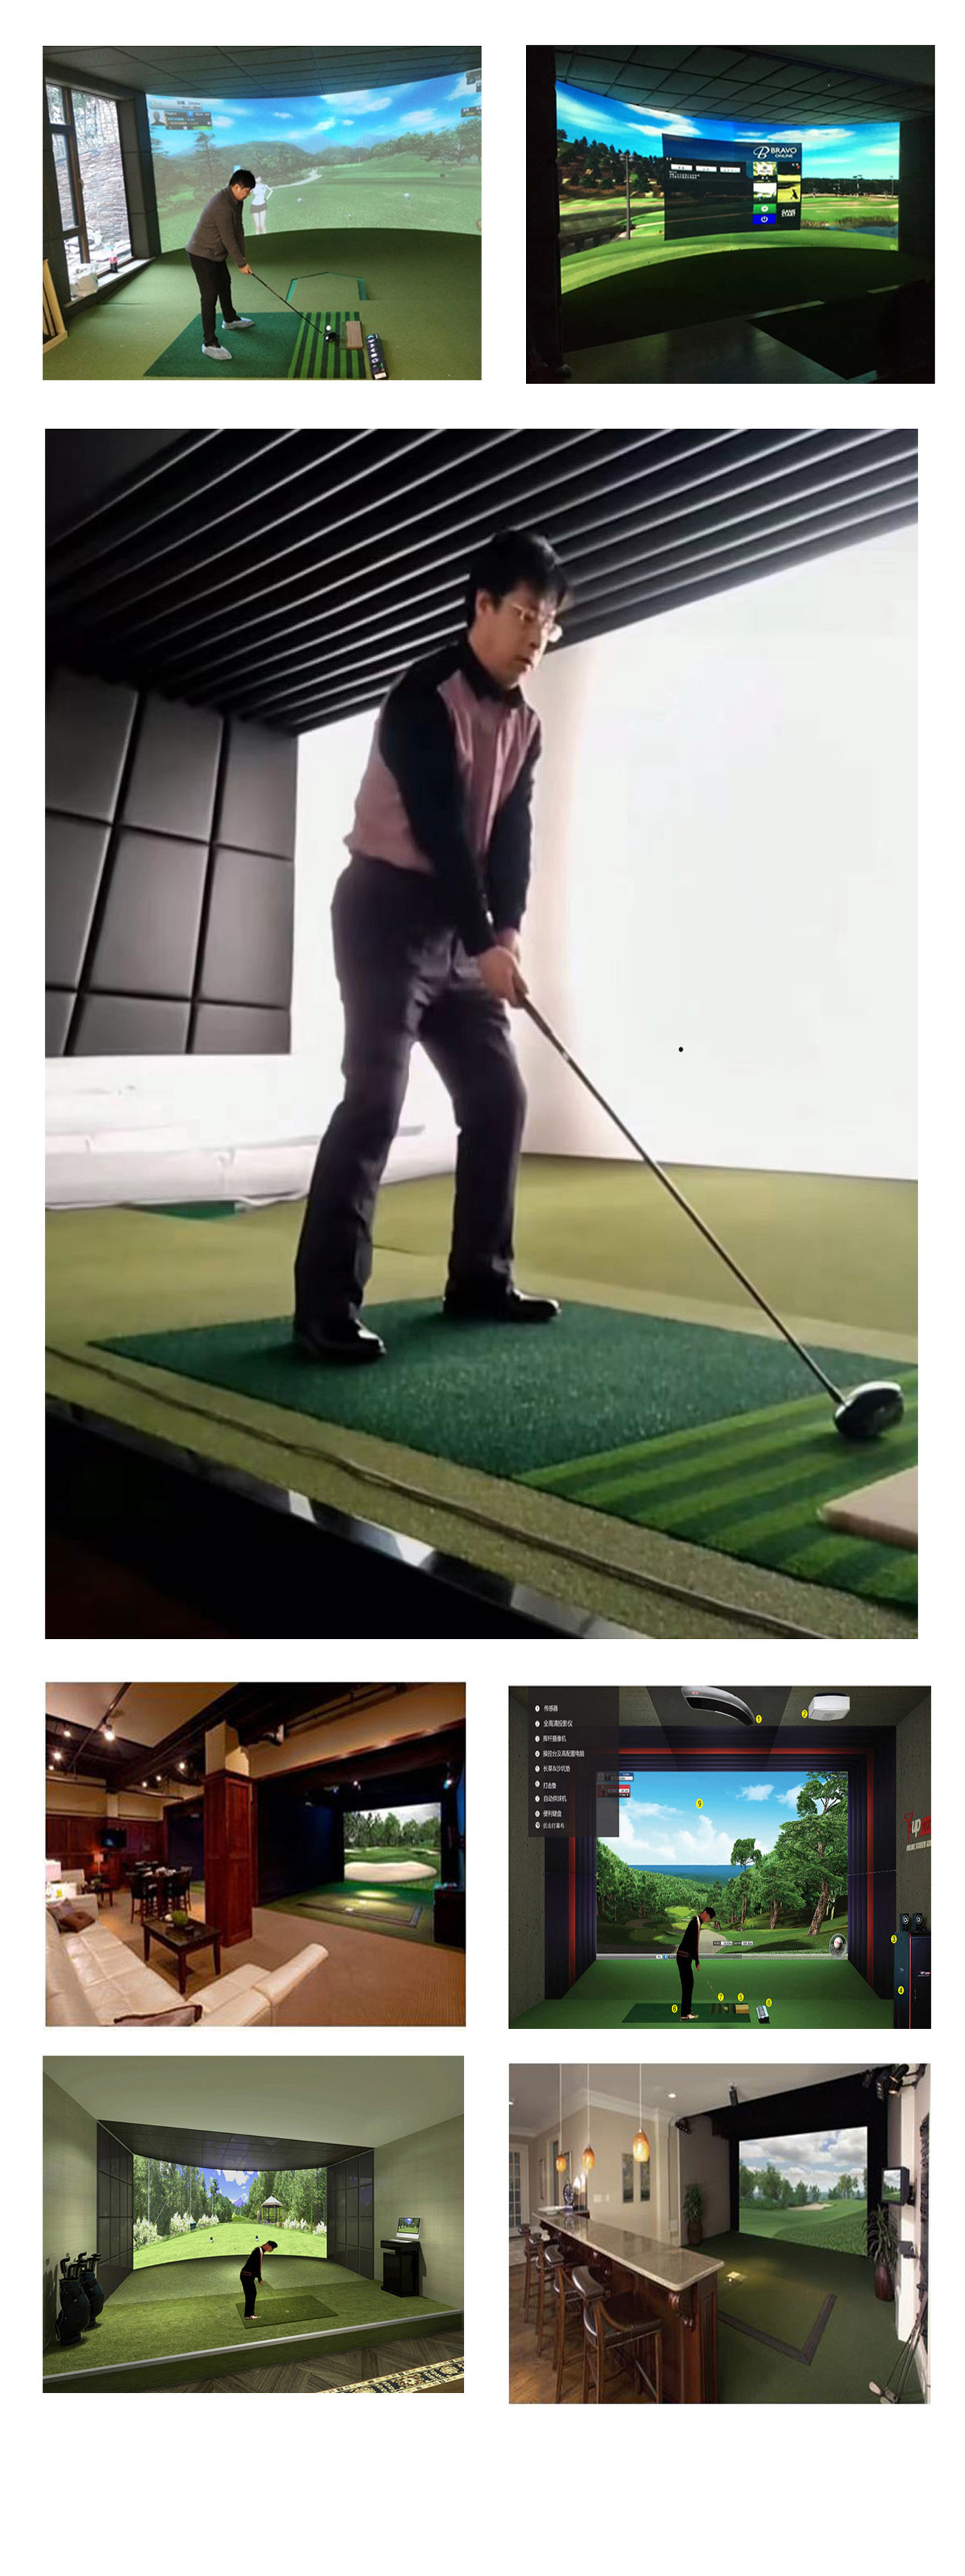 室内高尔夫模拟器设备 3.jpg